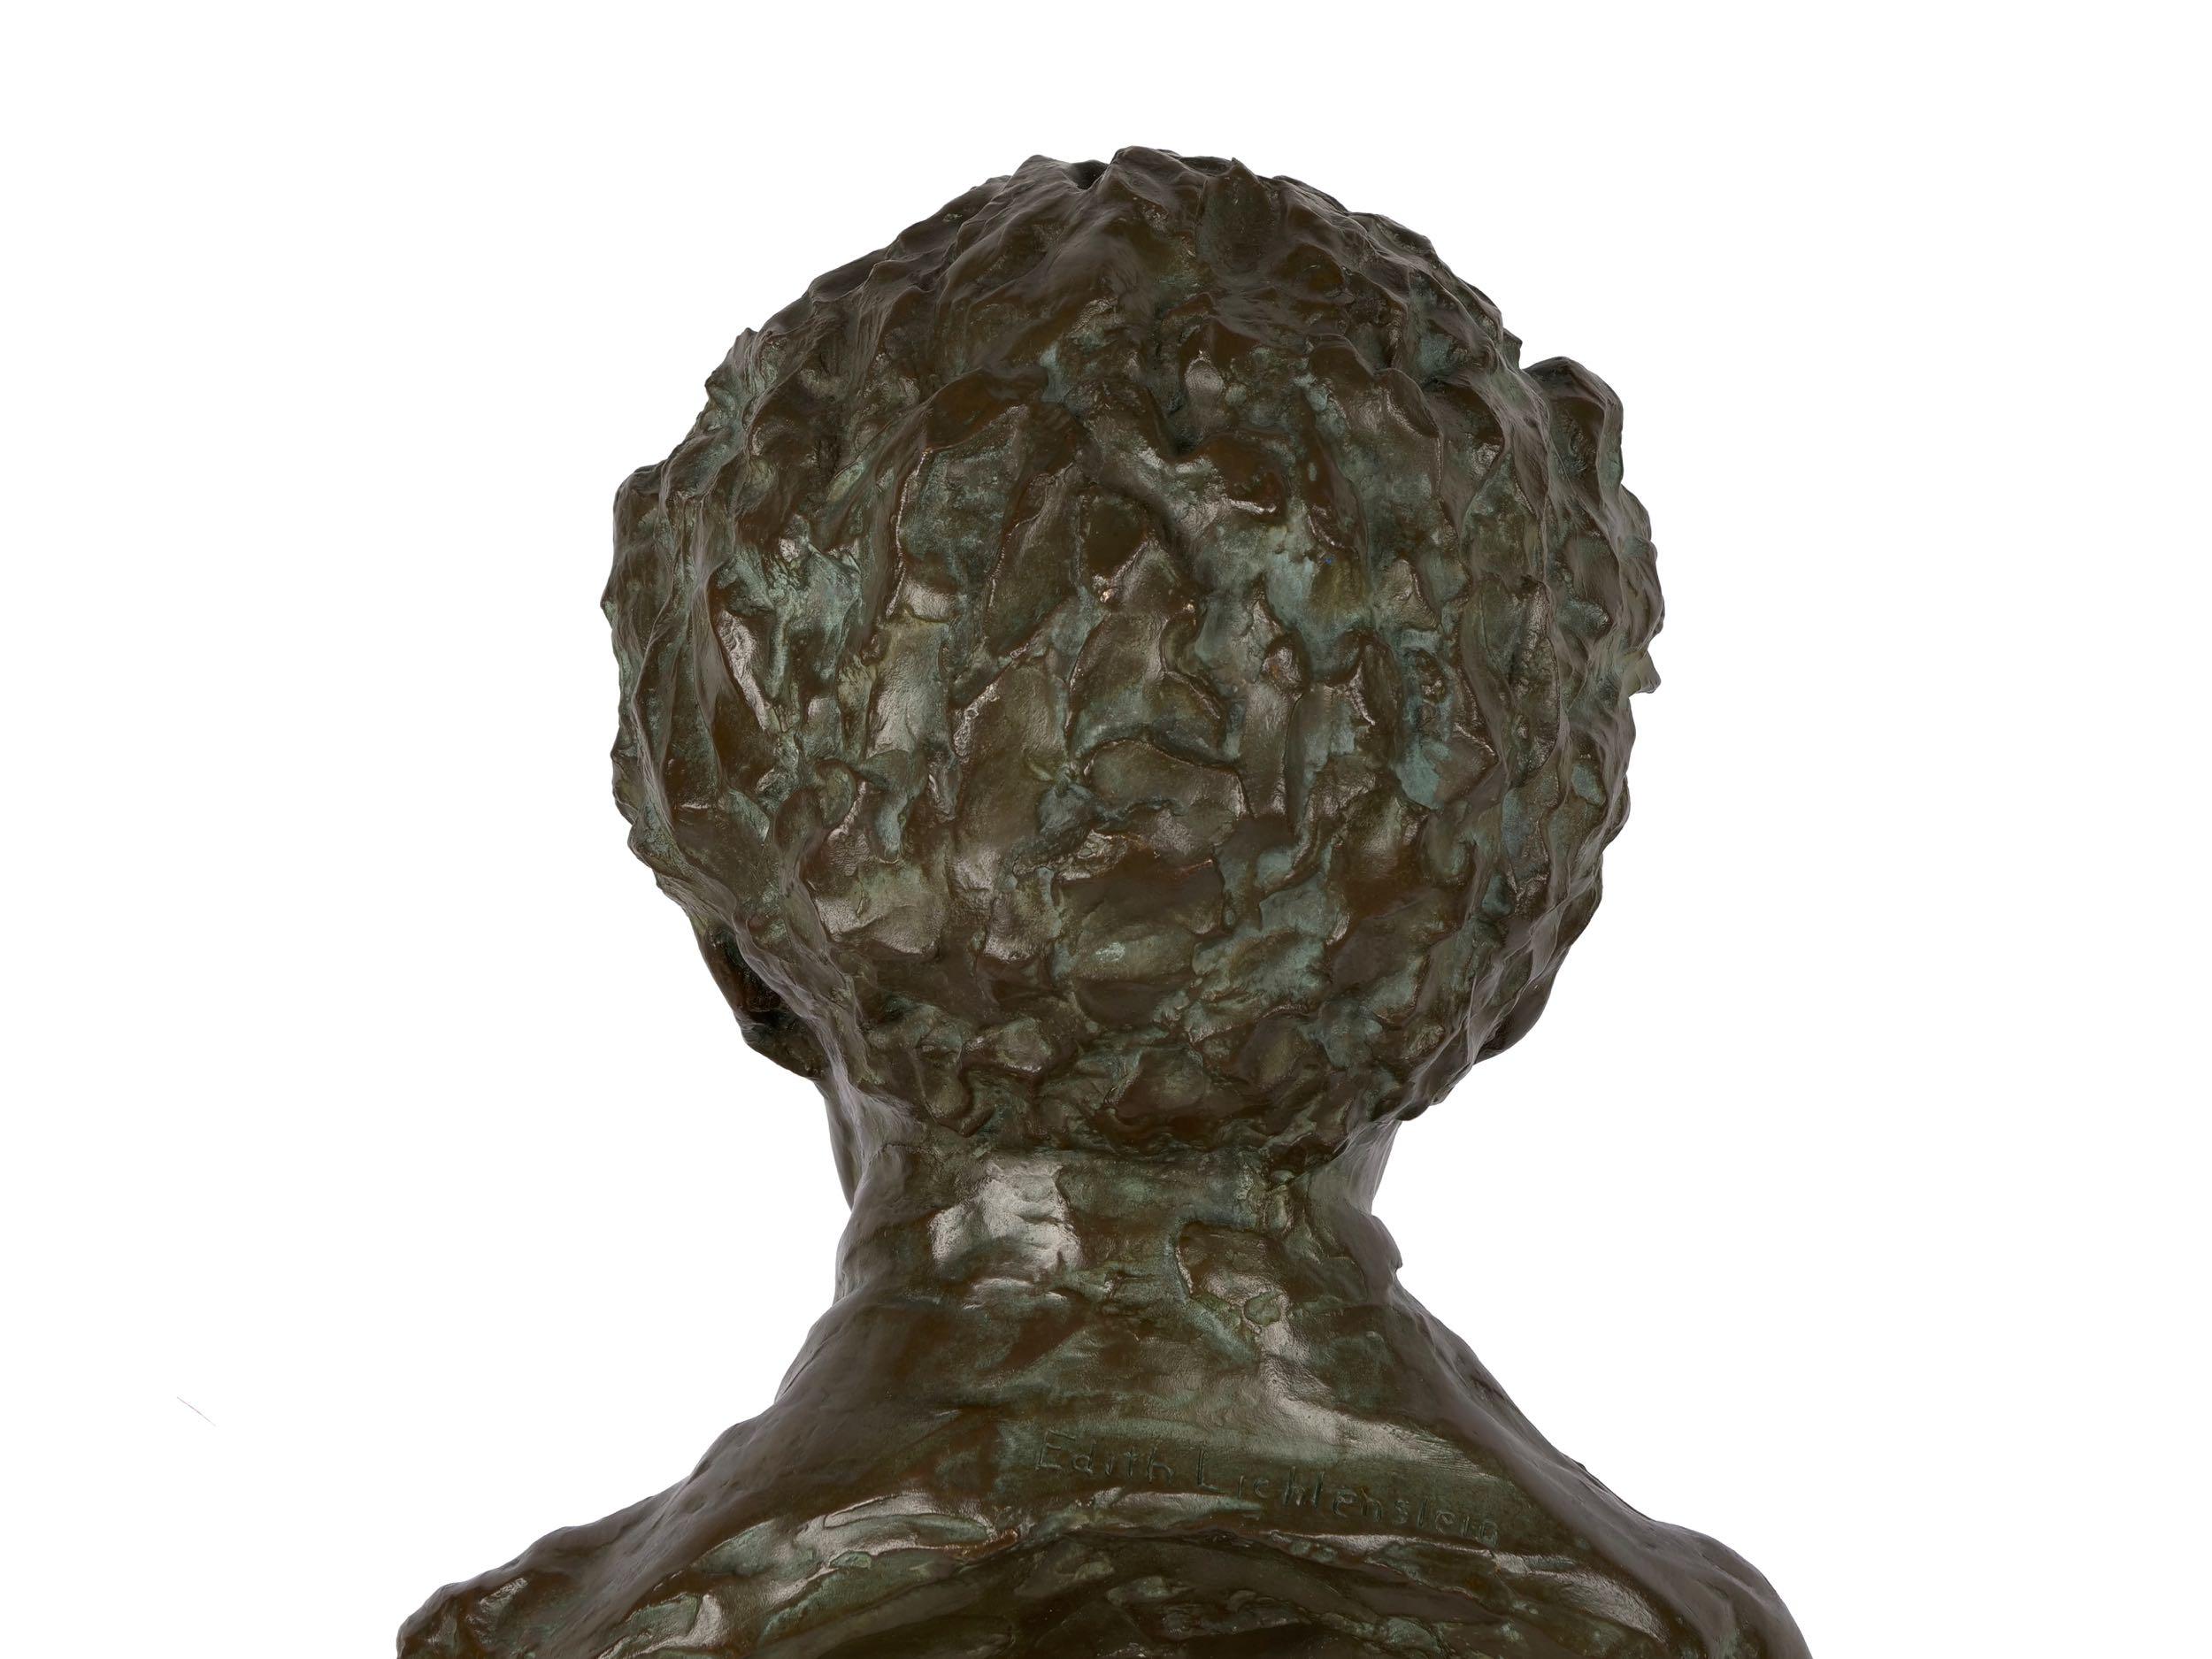 American Bronze Sculpture “Bust of Mozart” by Edith Lichtenstein & Gorham  8